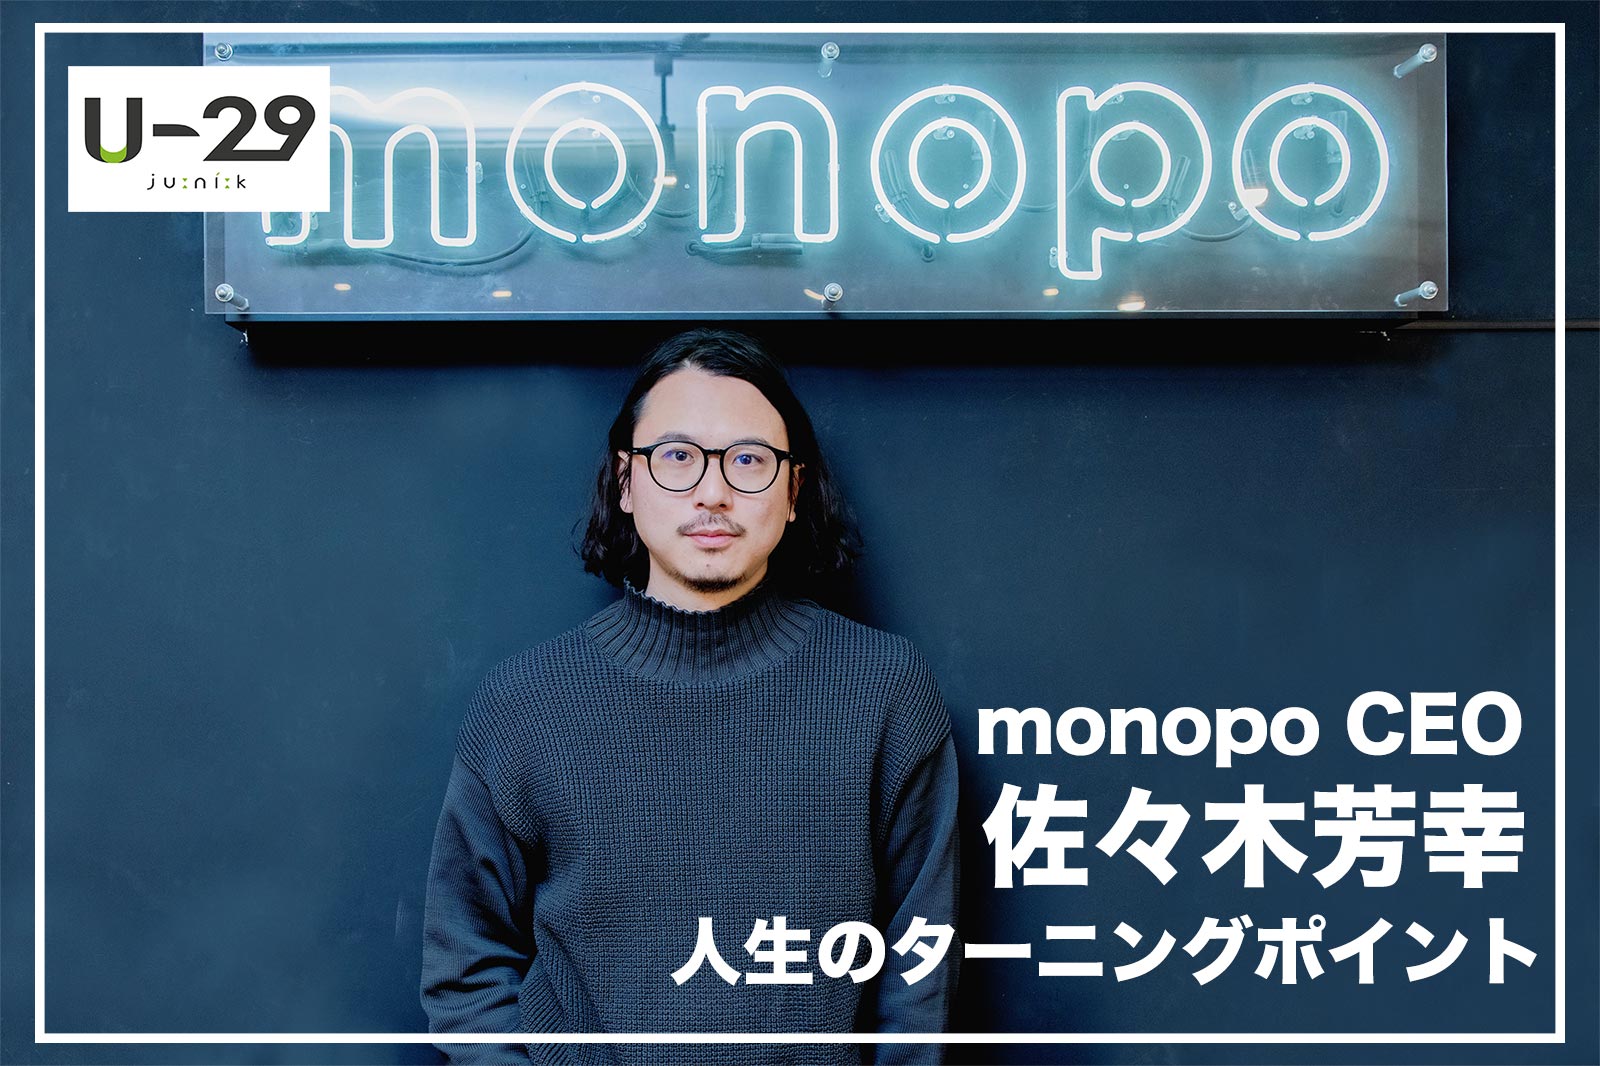 クリエイティブの総合商社を目指す『monopo』CEO・佐々木芳幸の今を作った人生のターニングポイント